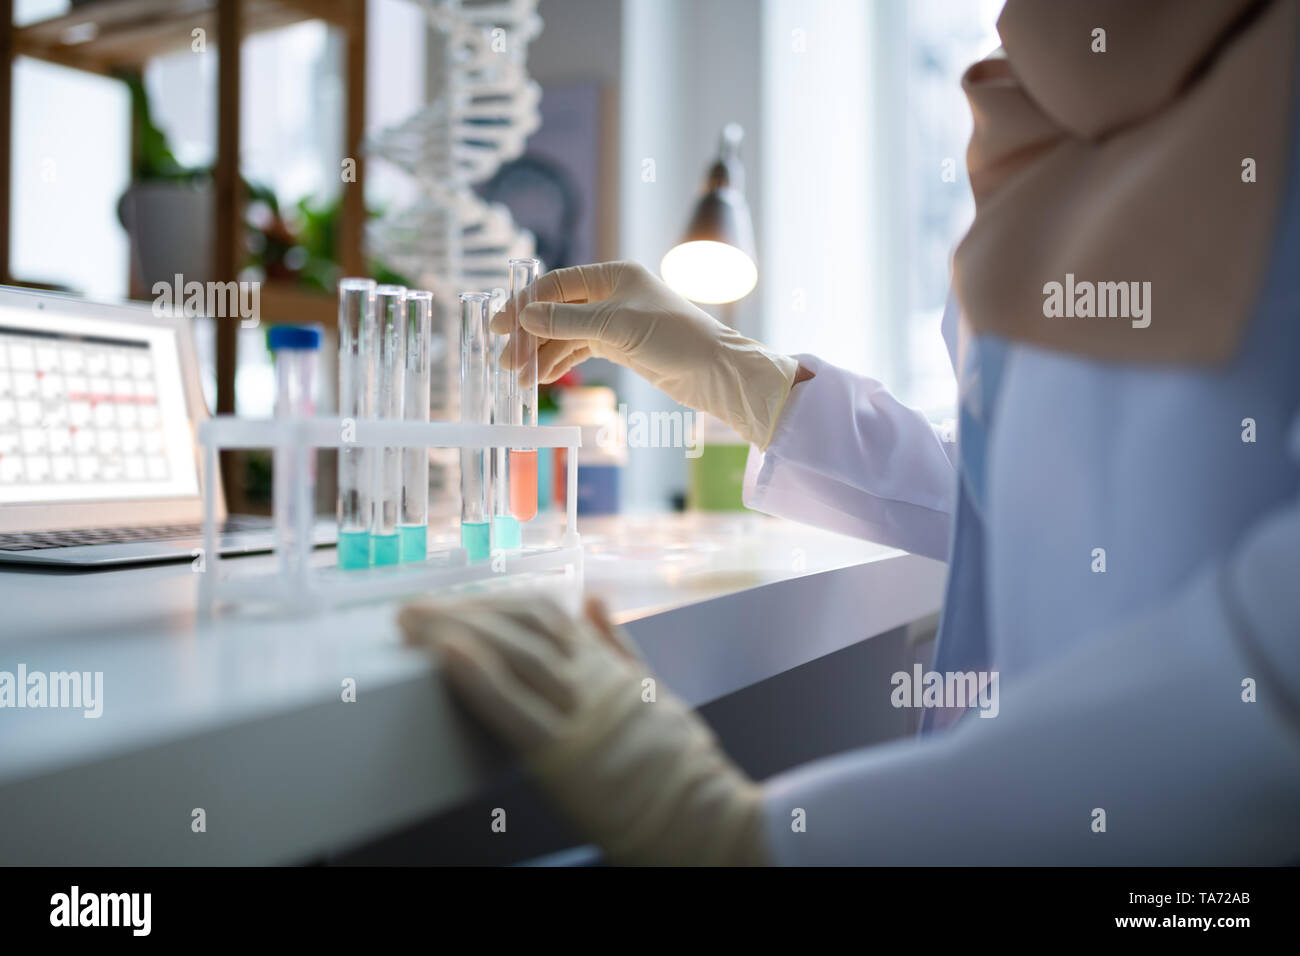 Farmacia vistiendo bata blanca y guantes trabajando en el laboratorio. Foto de stock